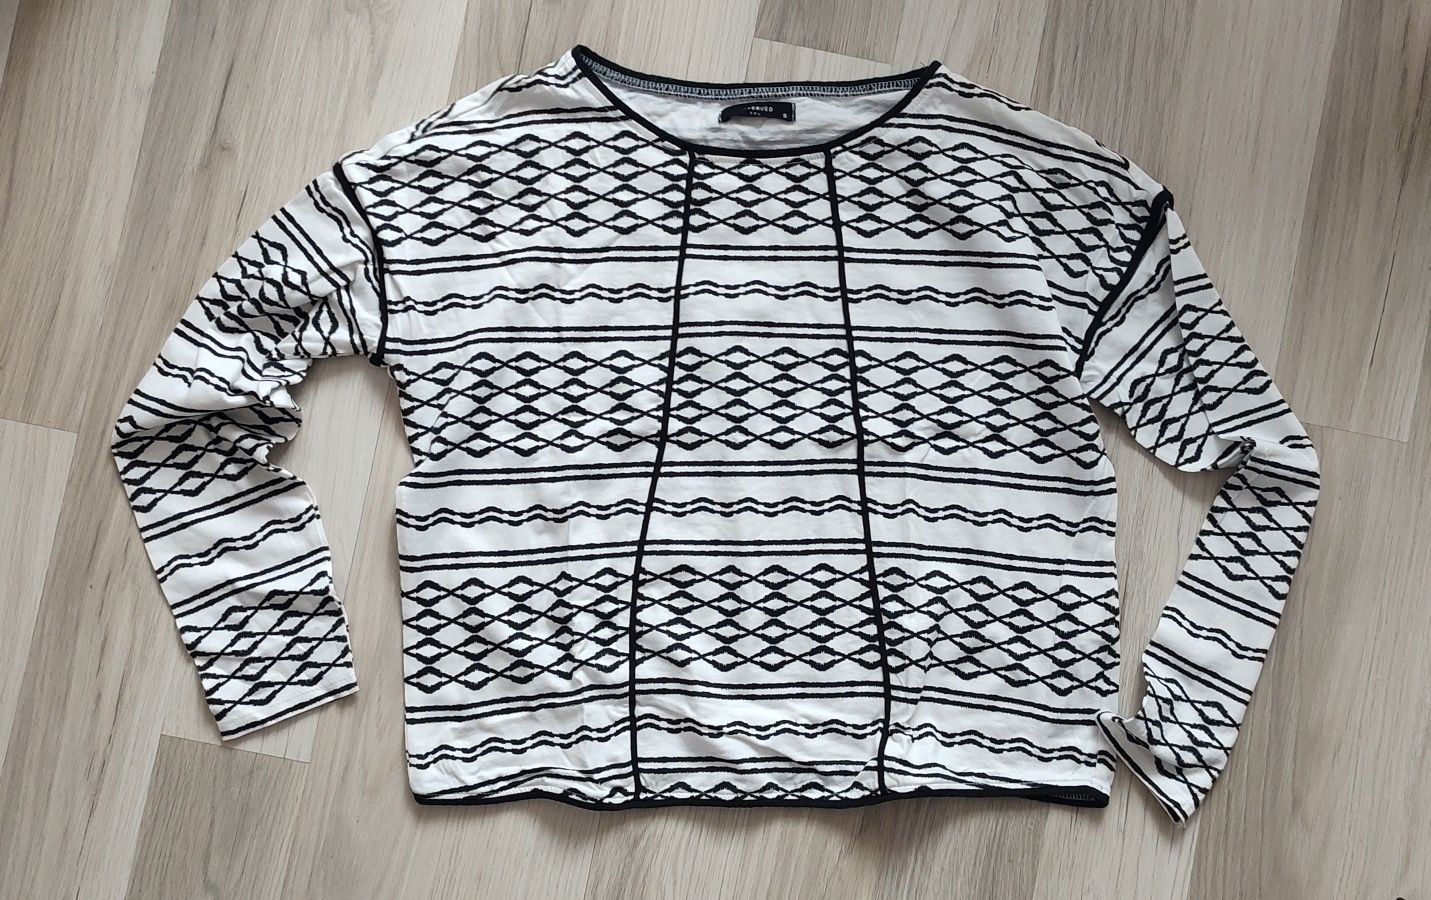 Zestaw, paka ubrań, bluzka Reserved + sweter, rozmiar S